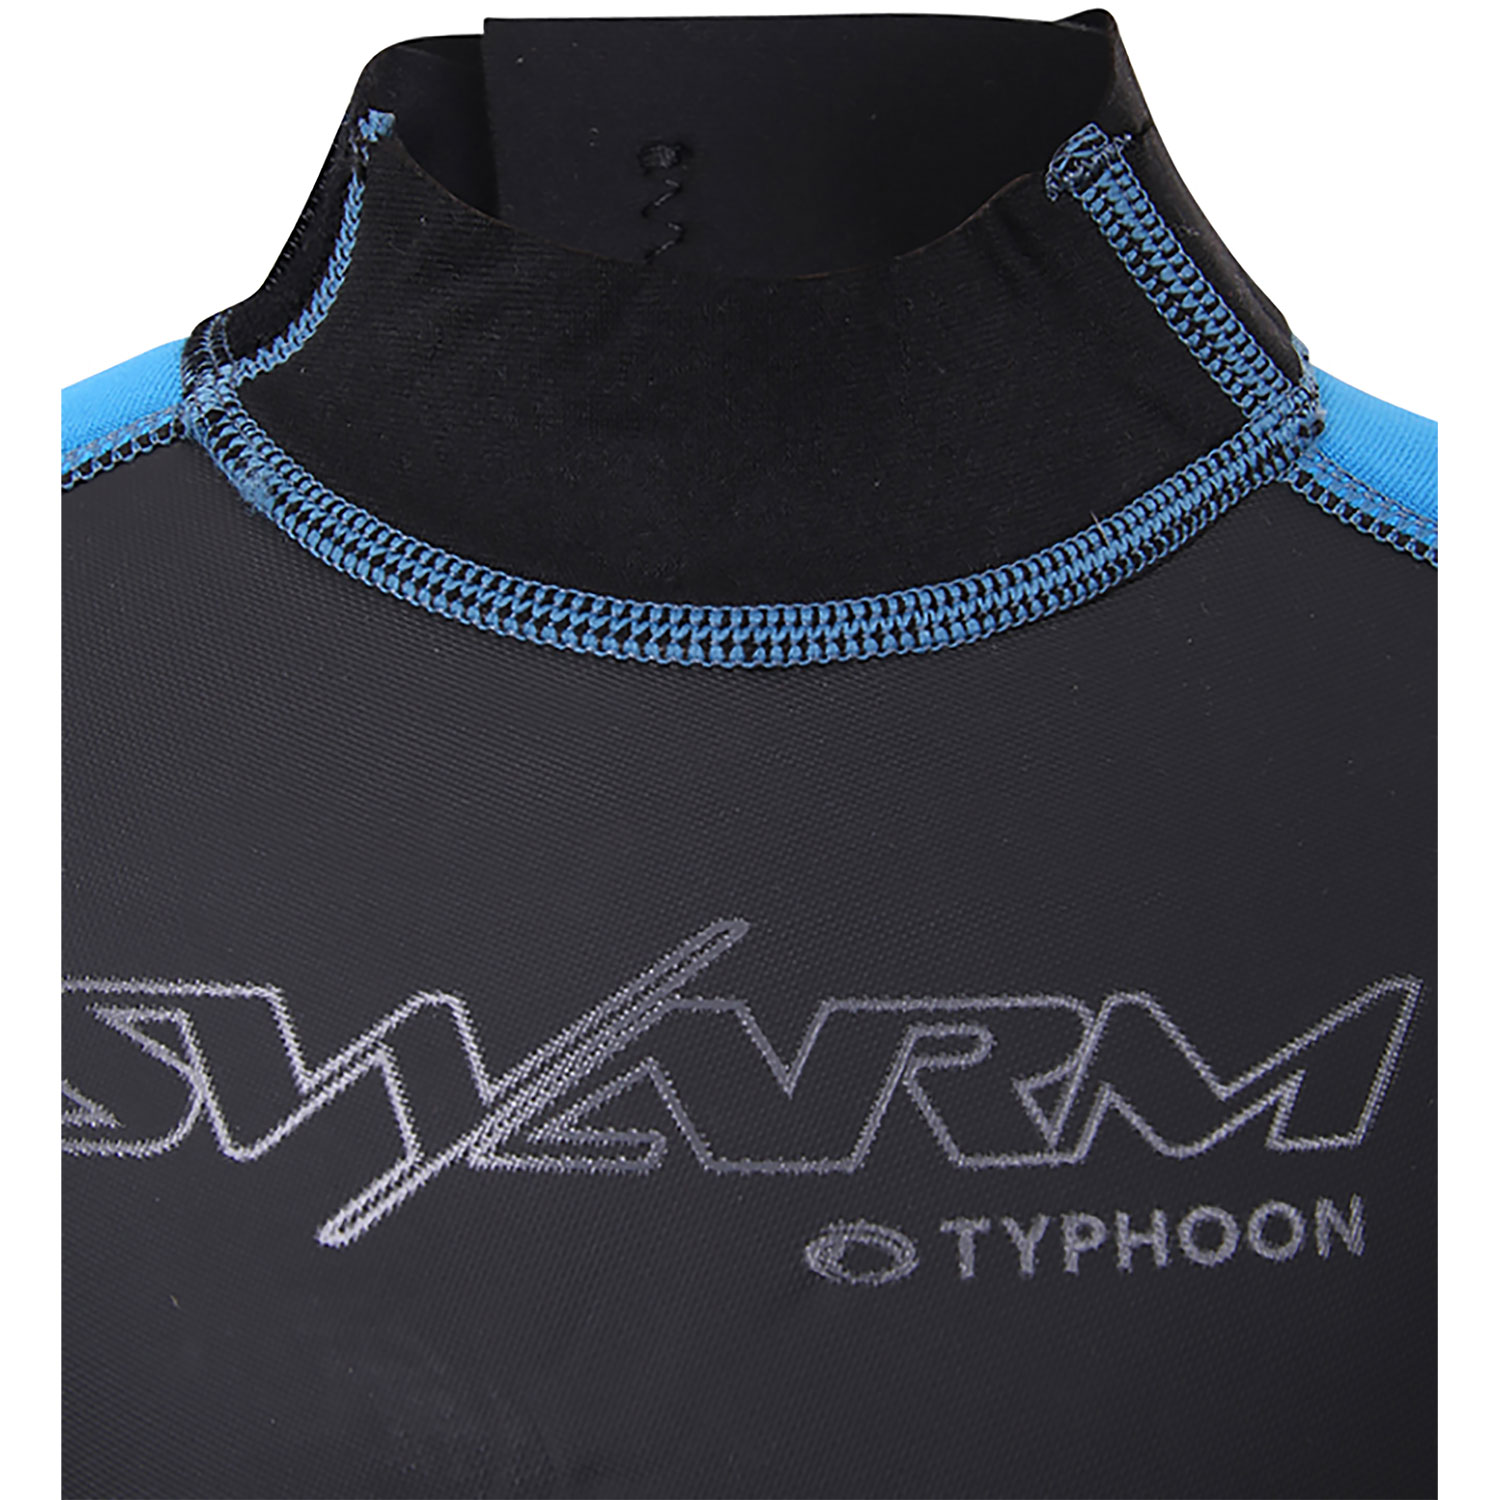 Typhoon Swarm3 Infants 3/2mm Shorty Wetsuit - Blue Steel/Blue 250996